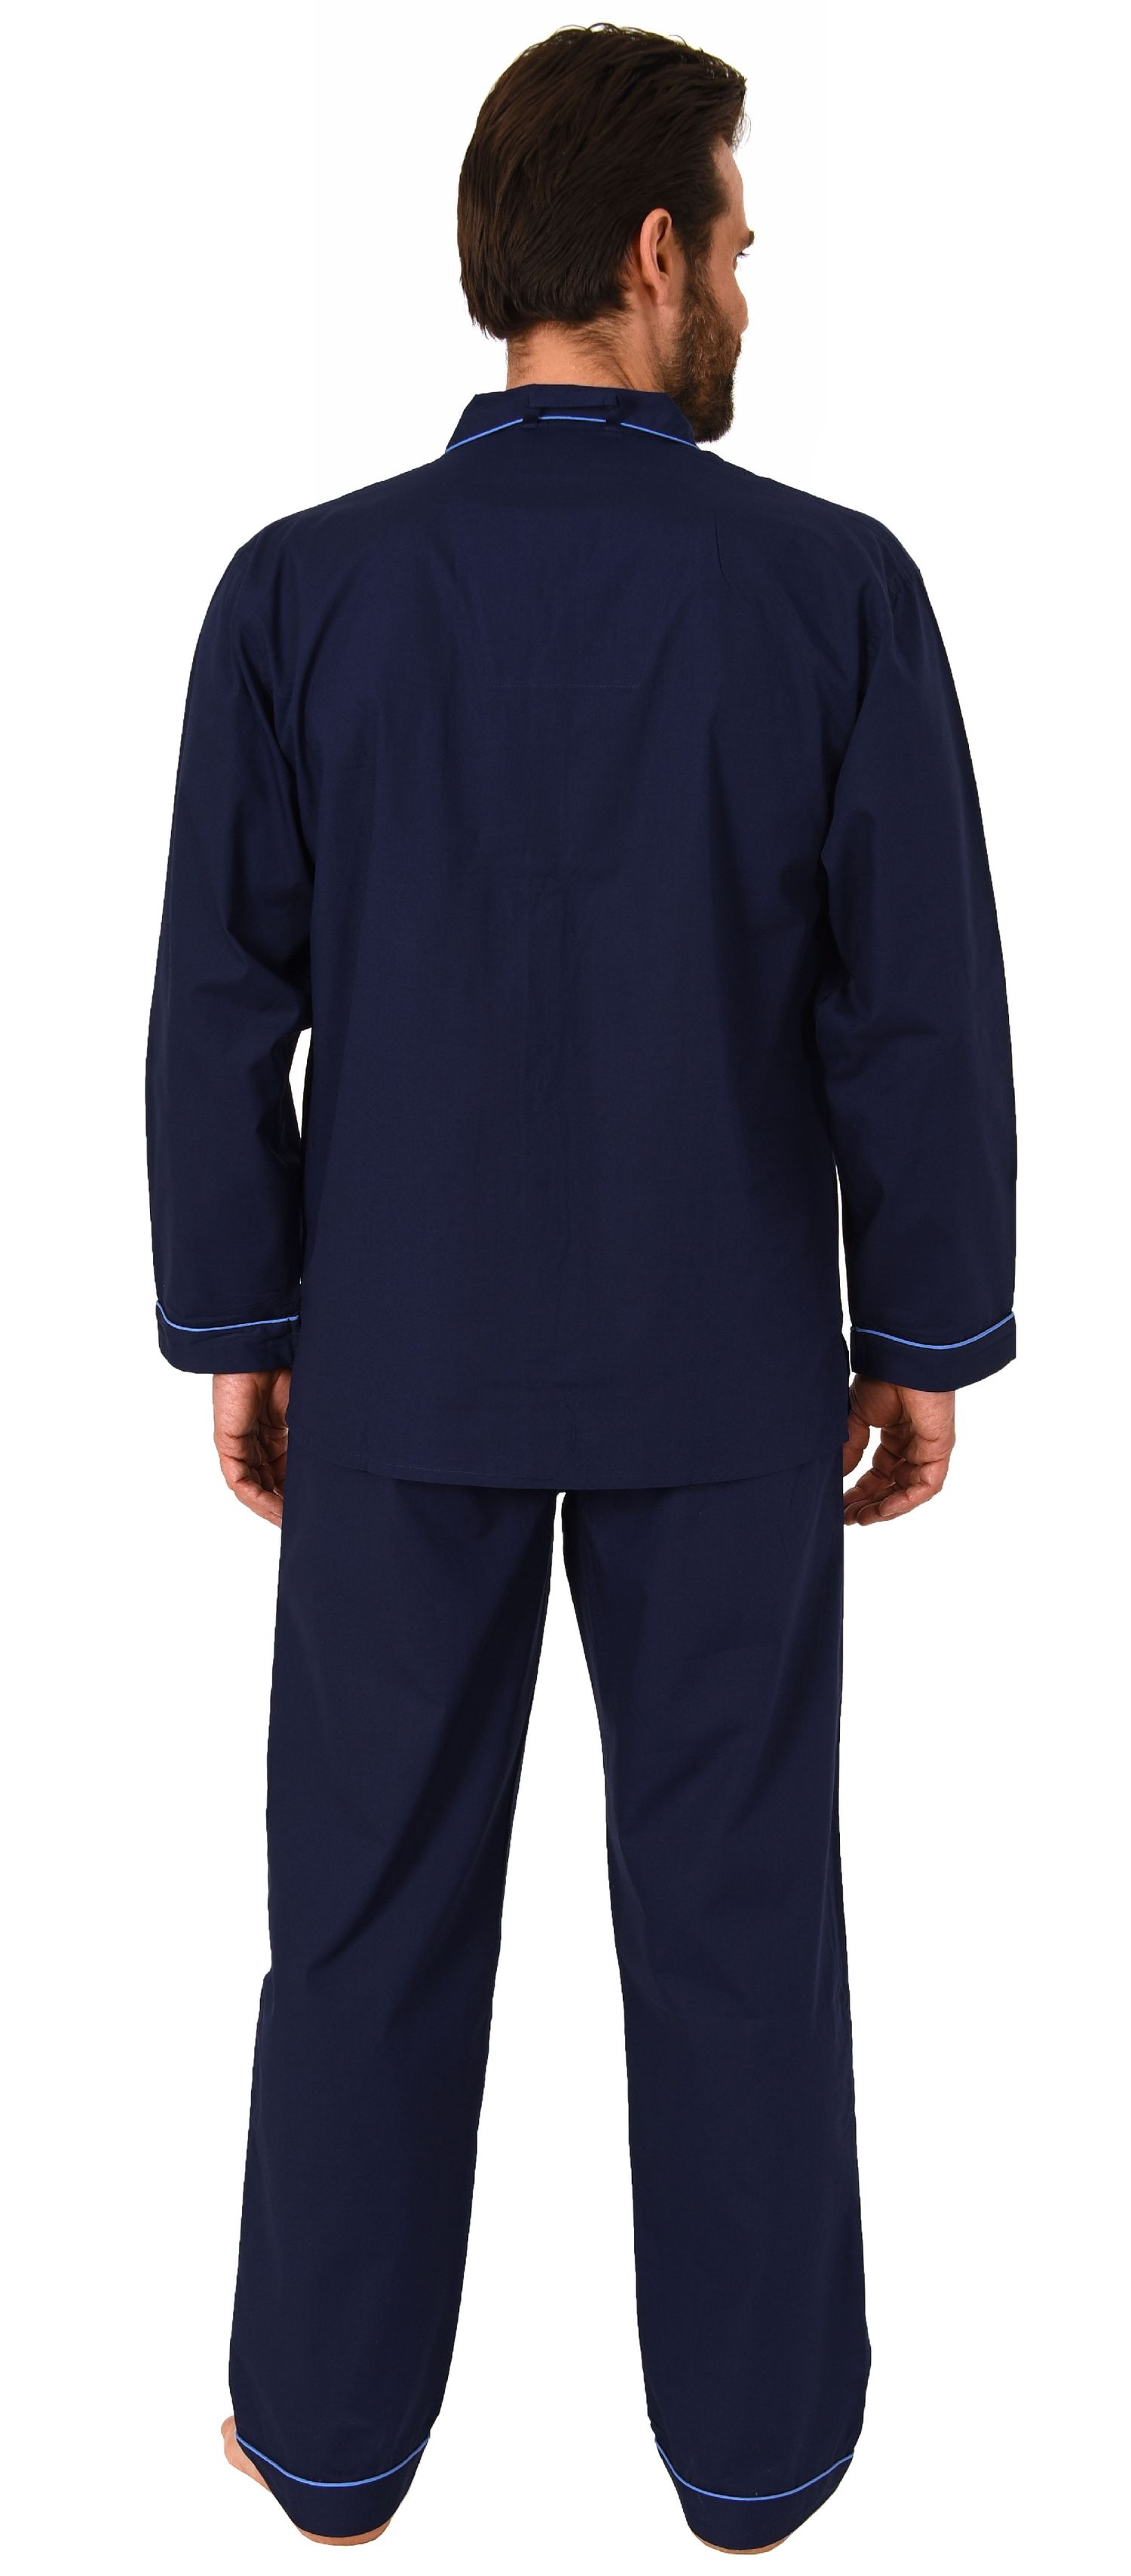 Klassischer Herren Pyjama gewebt mit durchknöpfbarem Oberteil - Popeline - 171 101 91 120